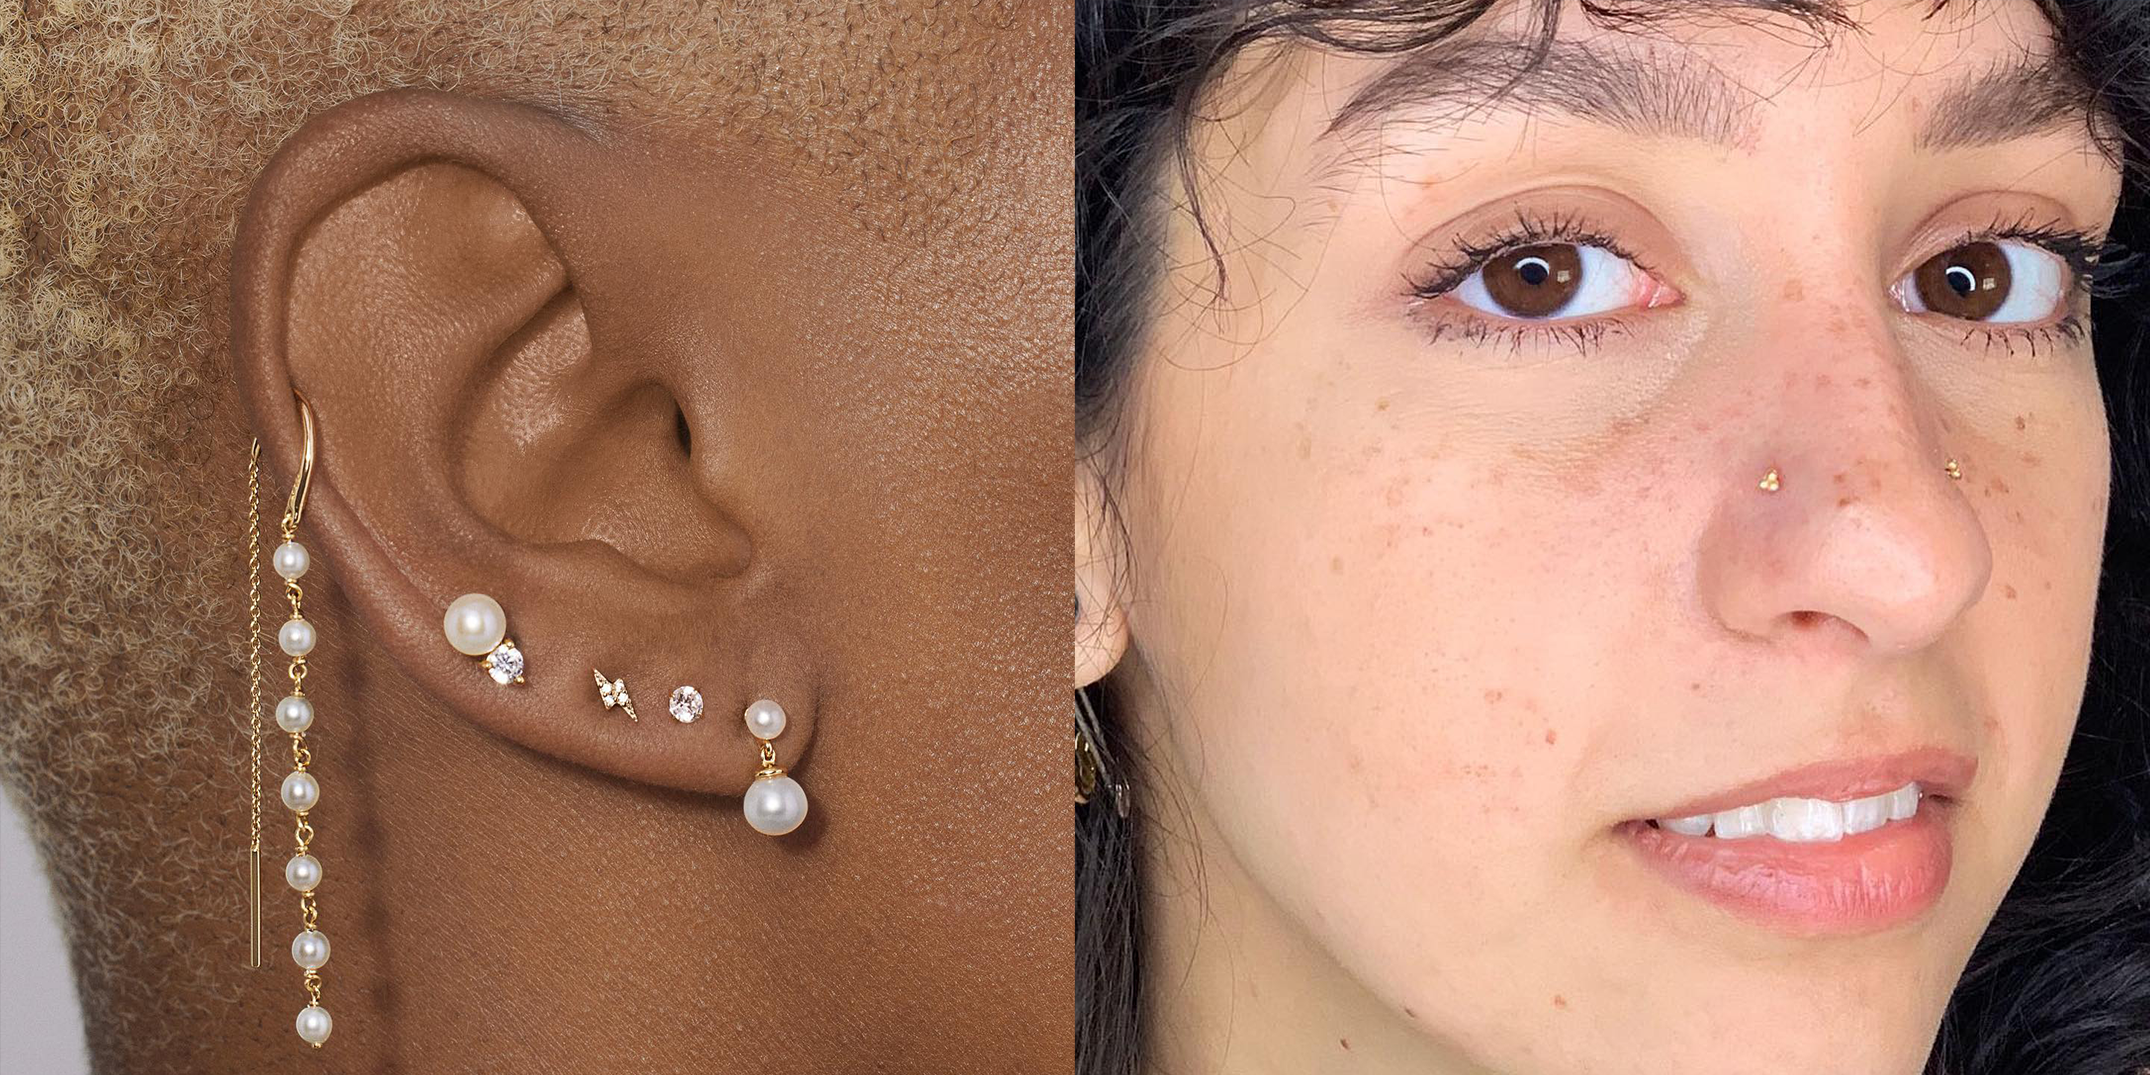 Discover 168+ 2 earrings in one ear latest